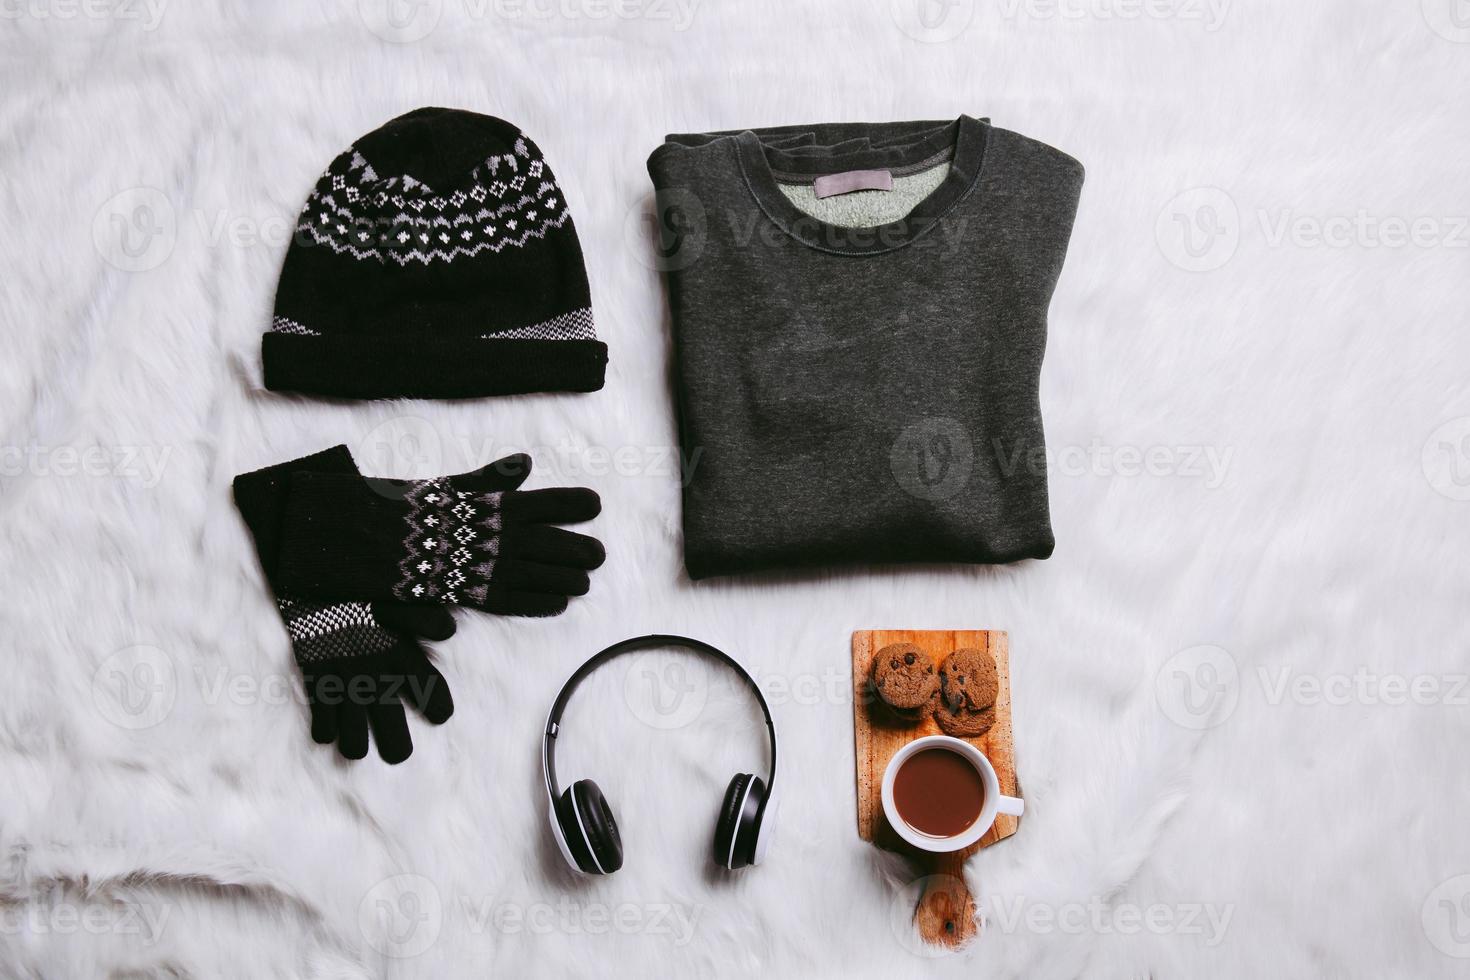 plano creativo de suéter, gorro, guantes de invierno para el fondo de la temporada de invierno foto